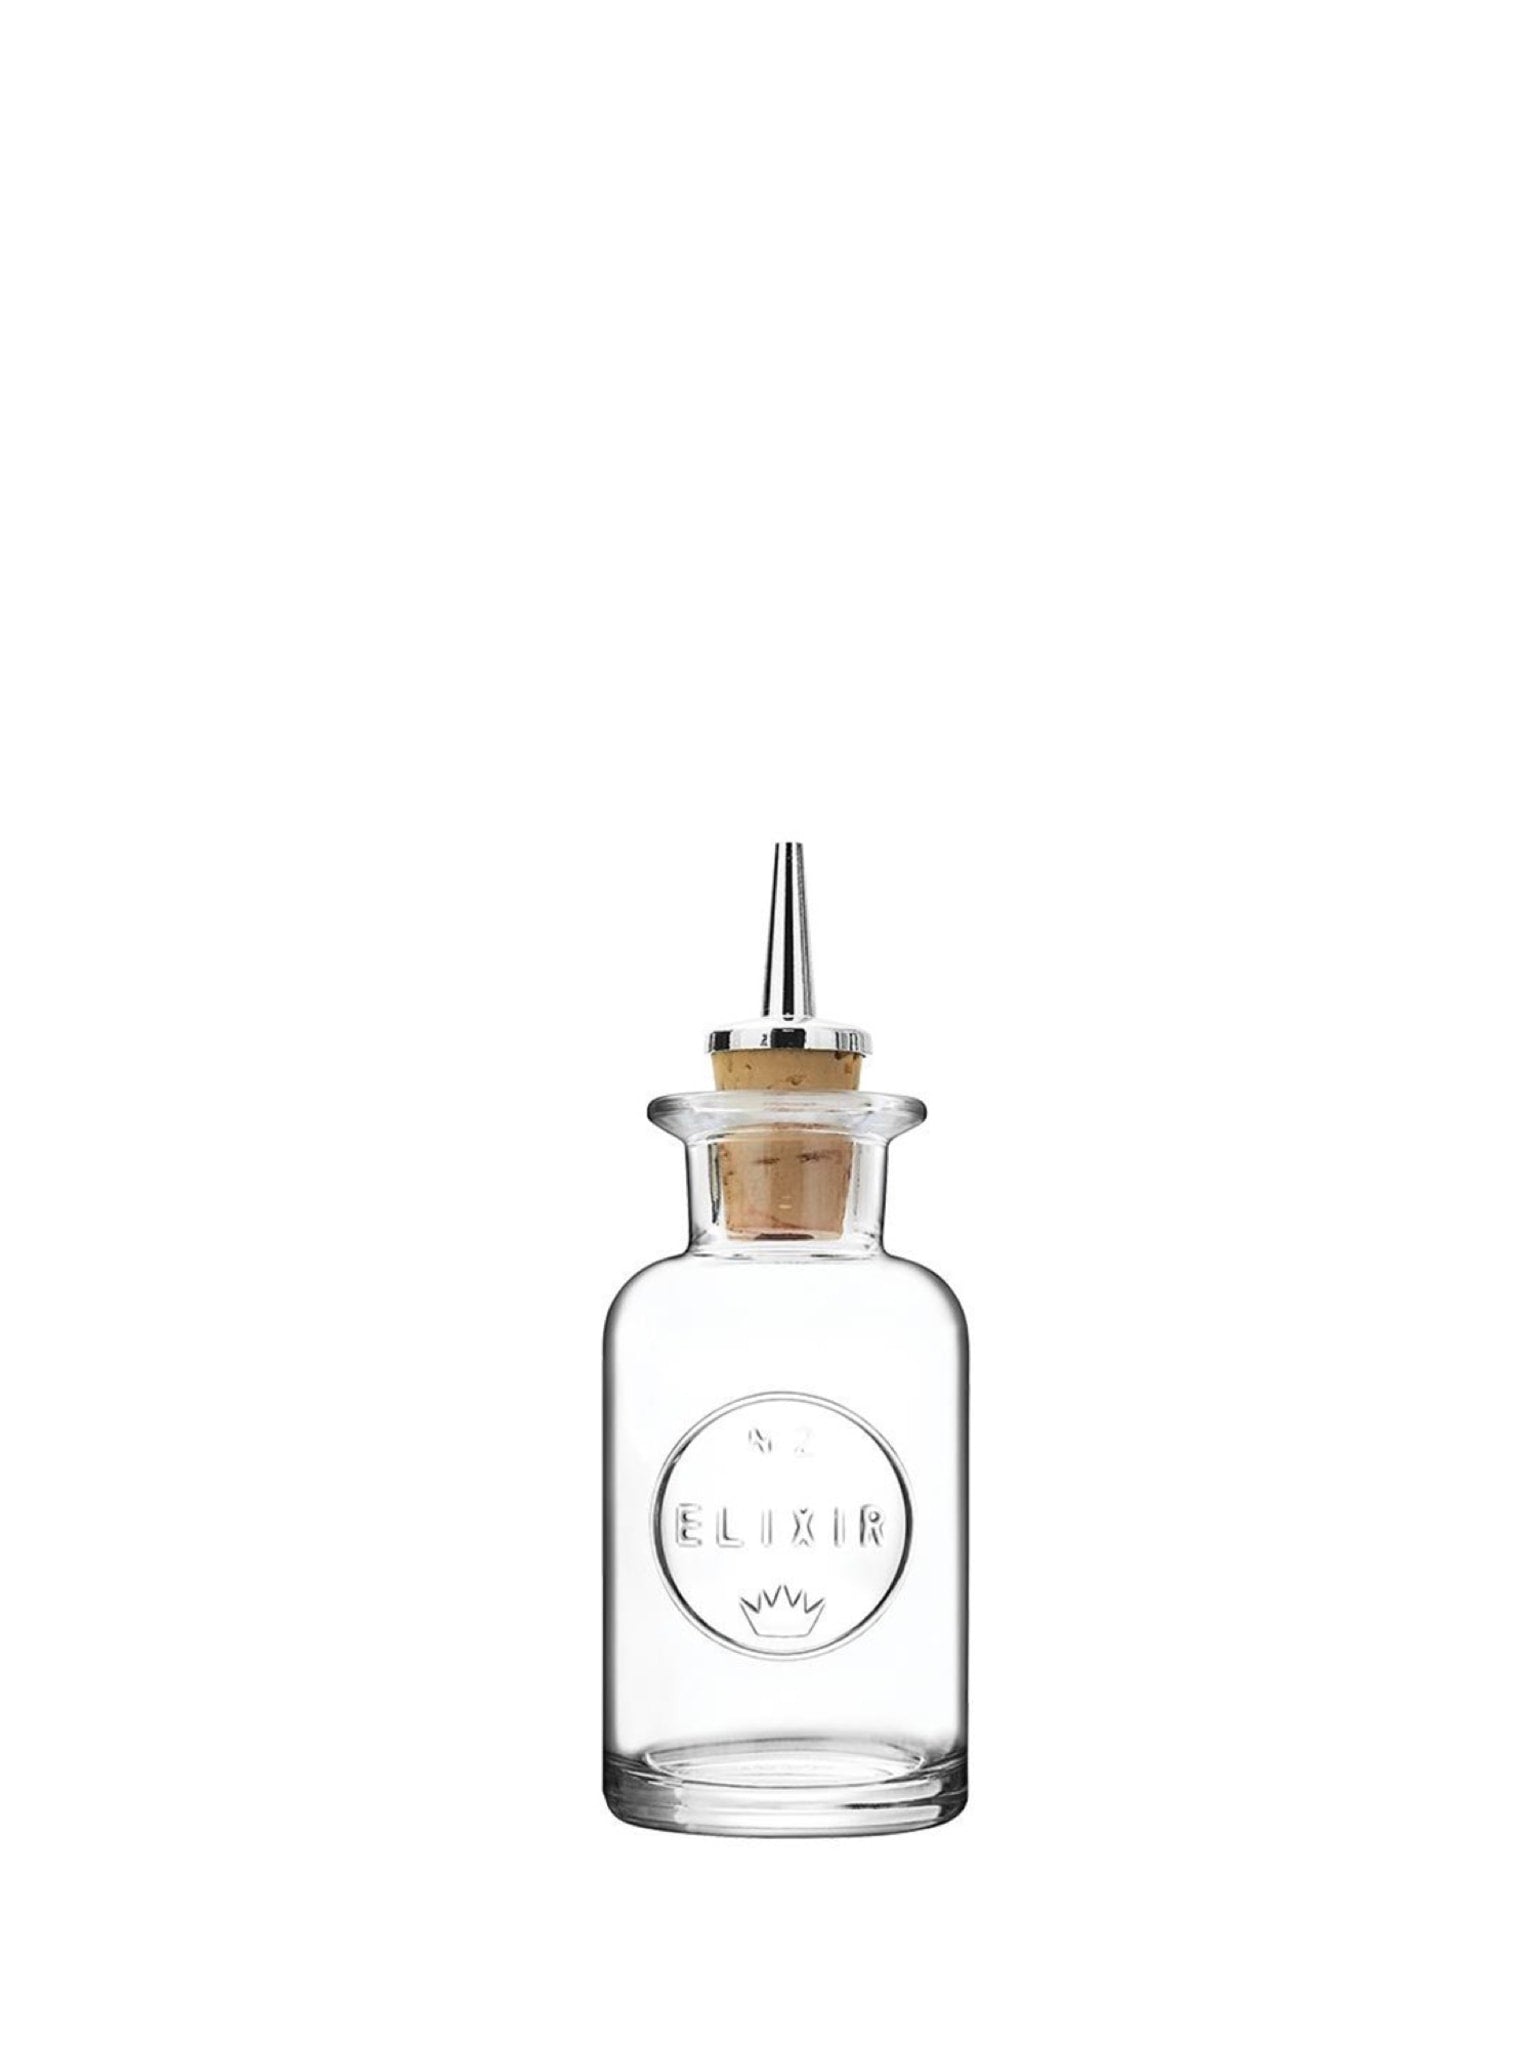 Elegant og praktisk Elixir No.2 Dash flaske til præcis dosering af ingredienser til dine cocktails